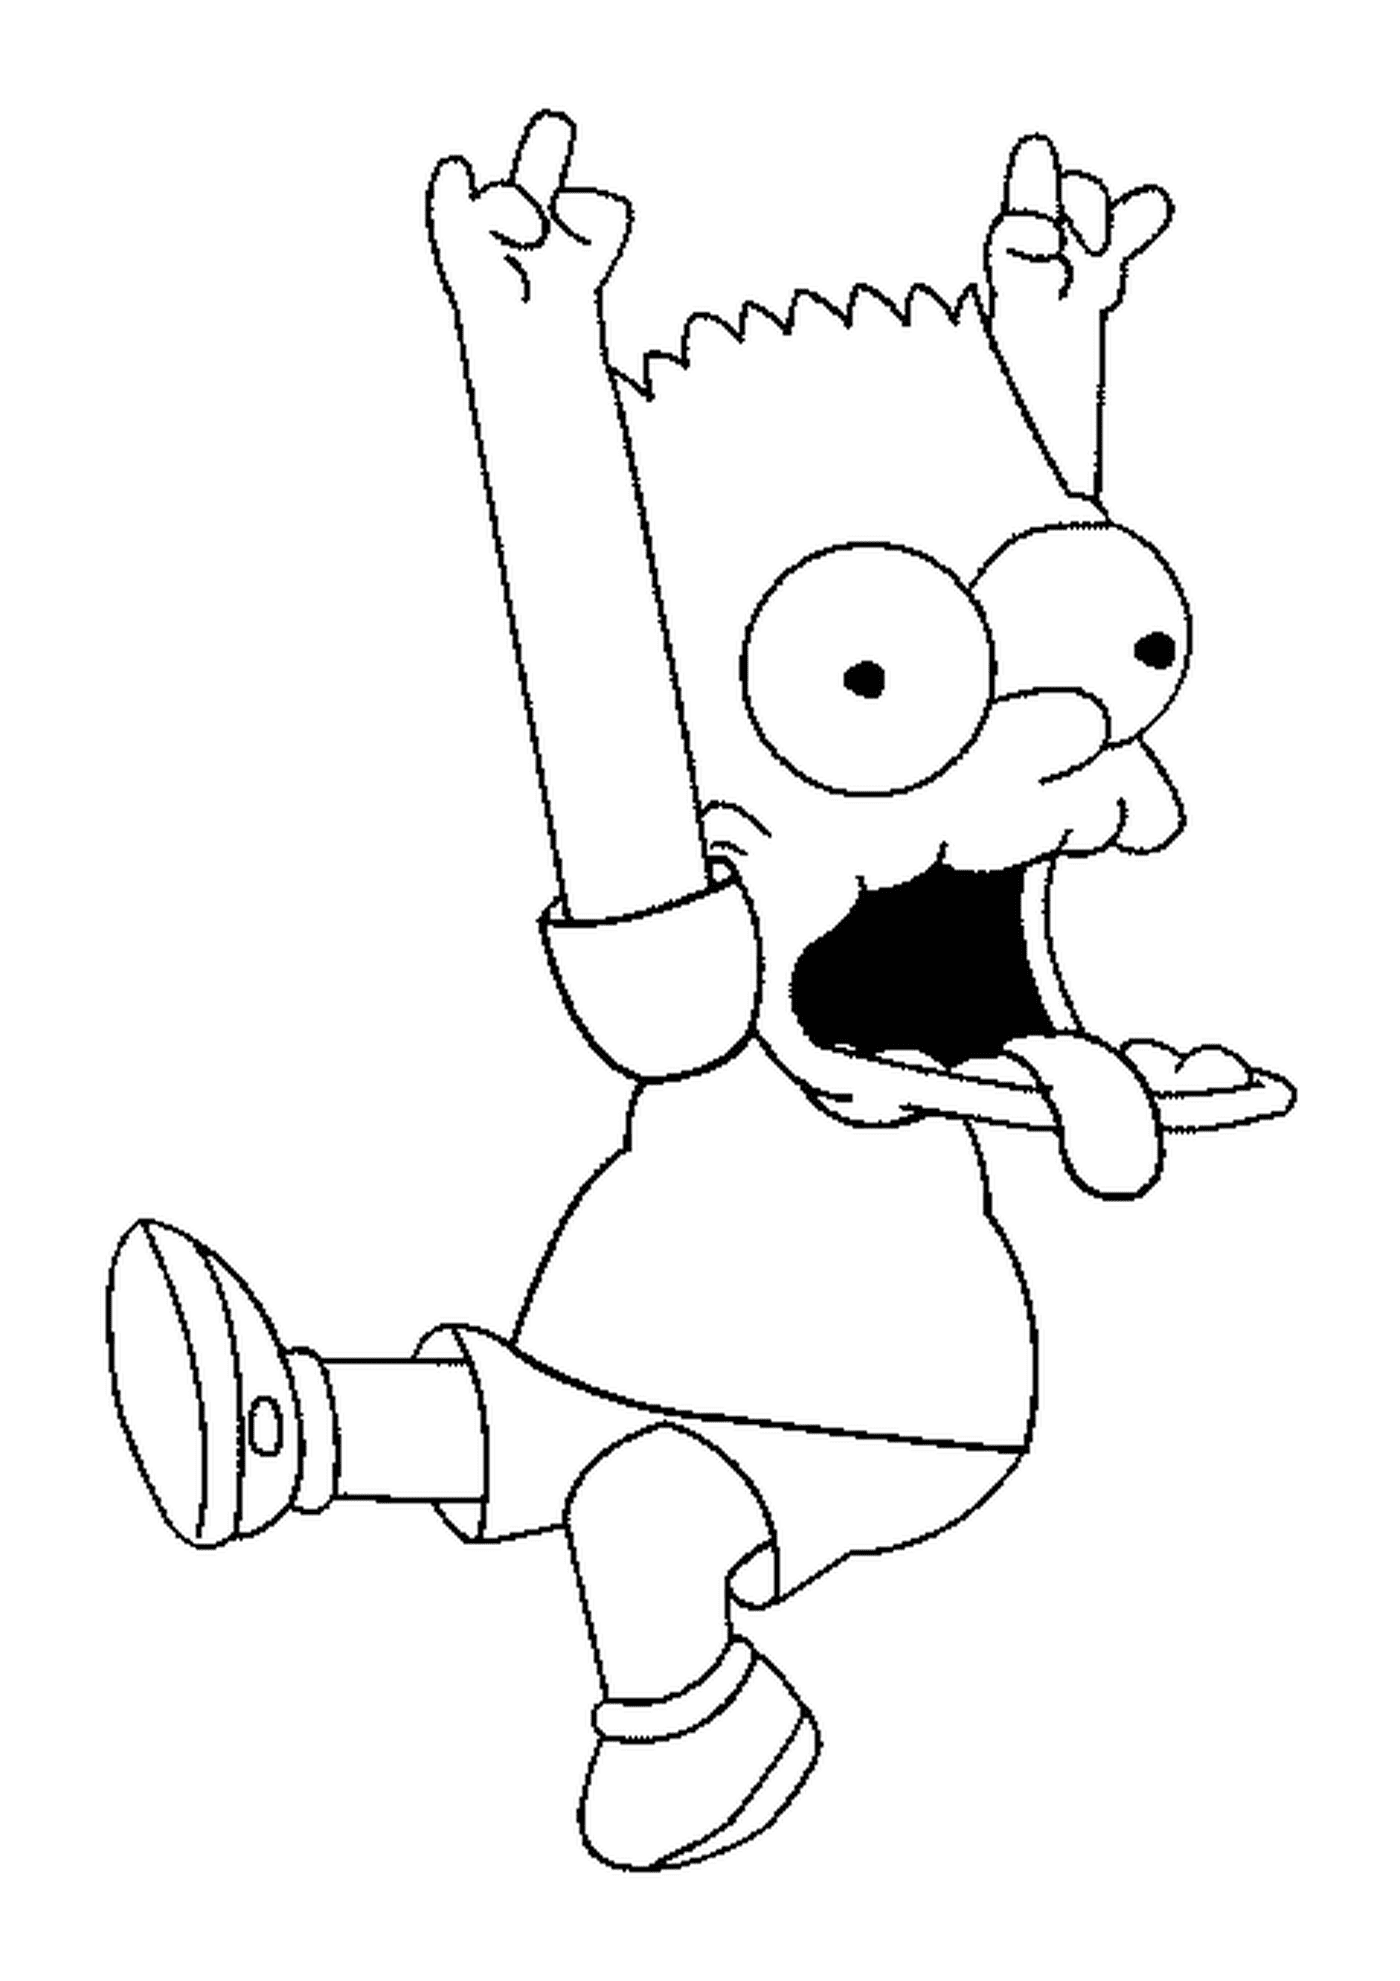  Барт делает гримас с руками в воздухе 